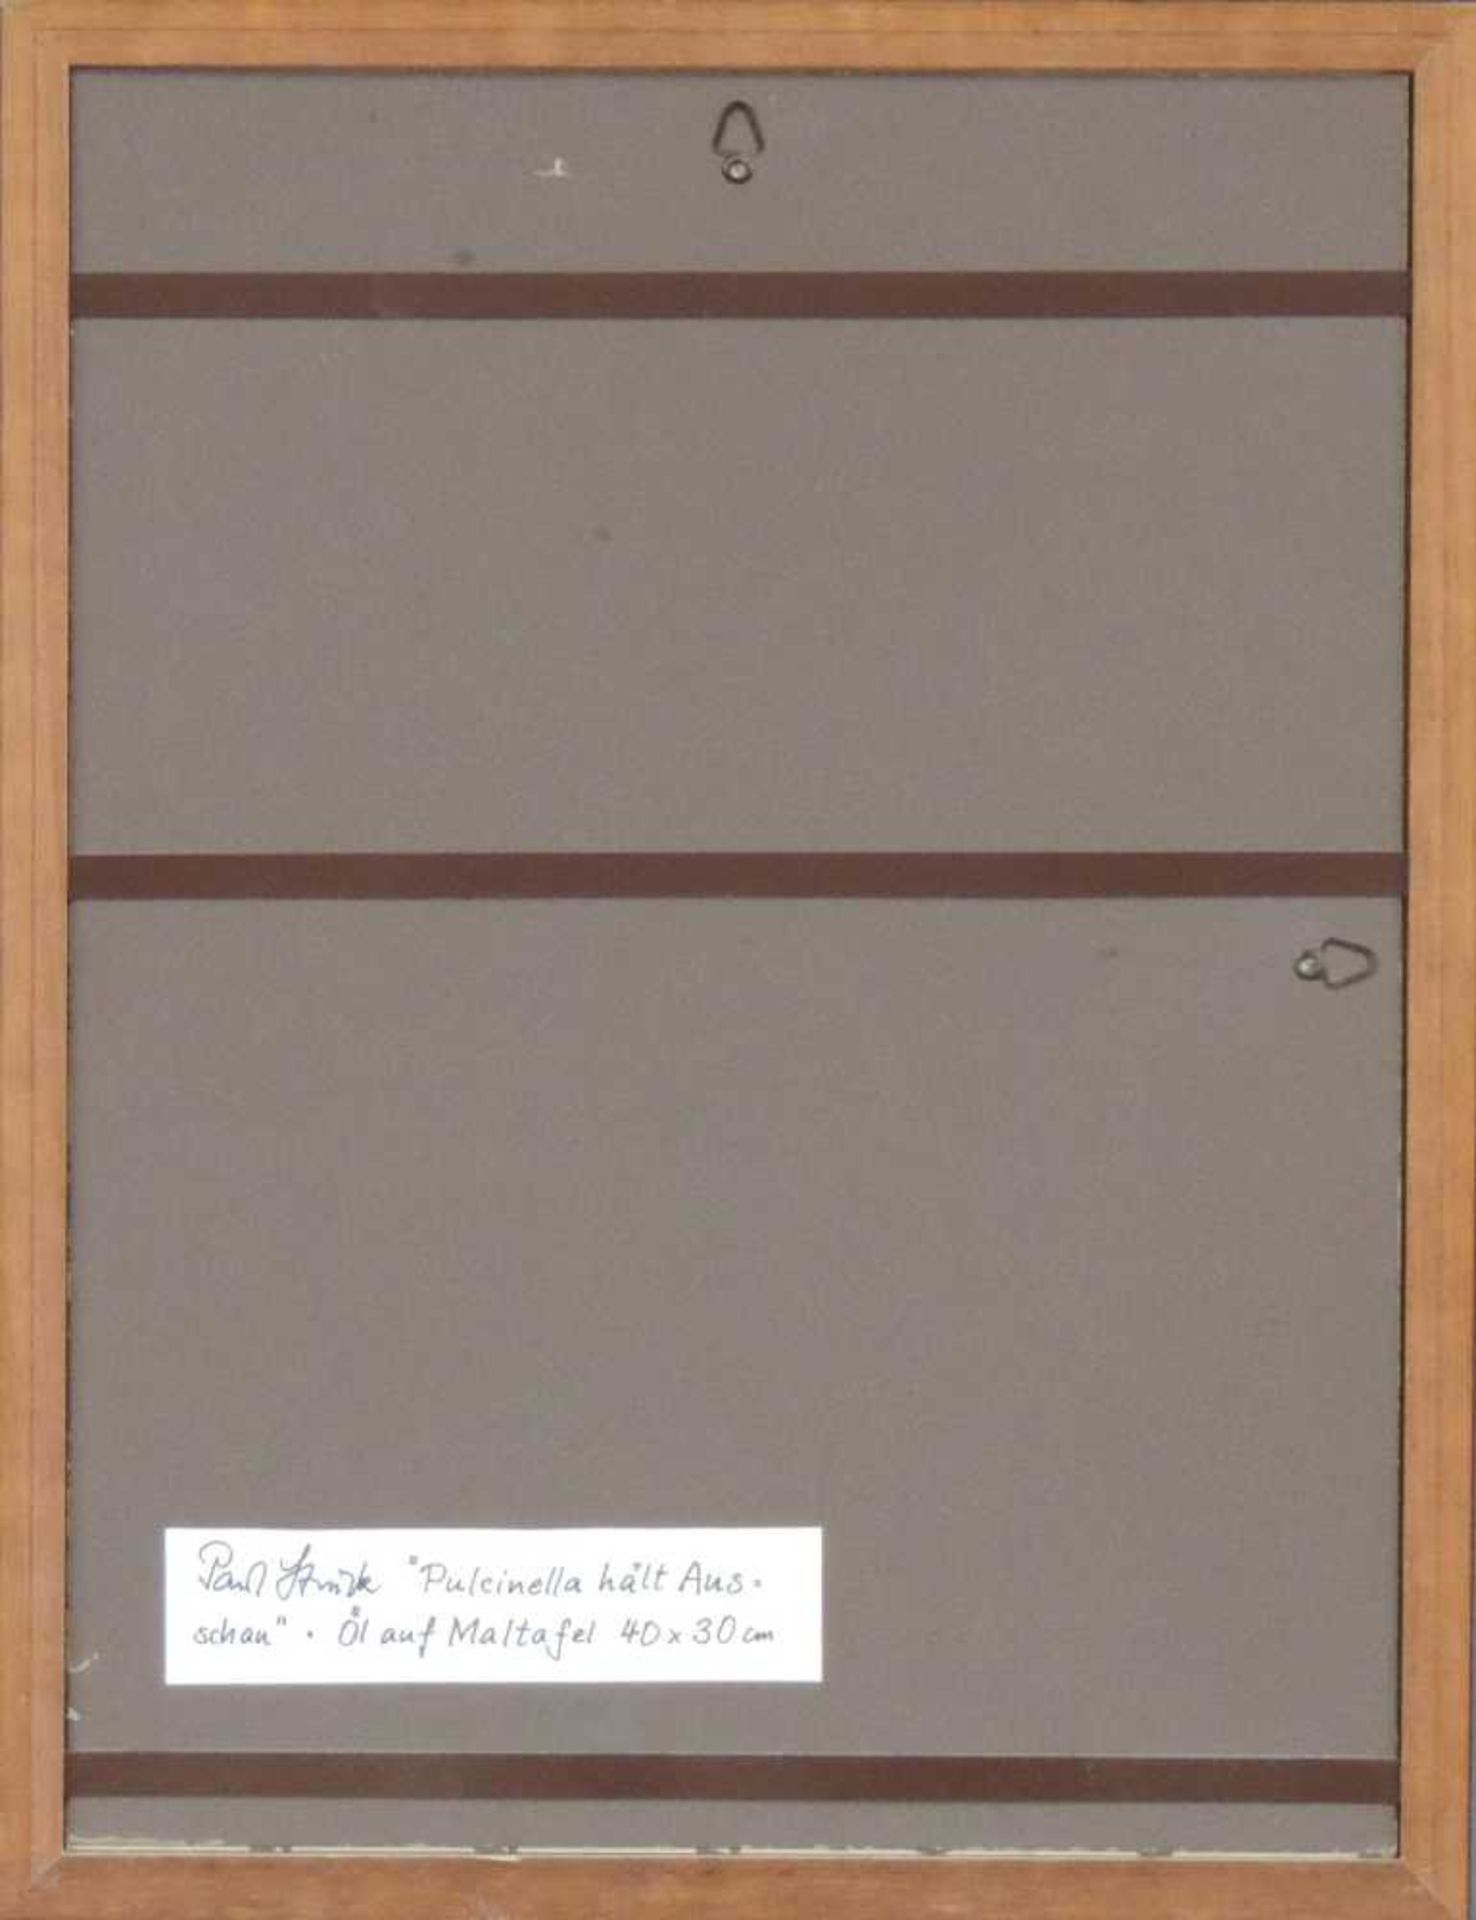 Paul STRUCK (1928 - 2015). "Pulchinella hält Ausschau". 40 cm x 30 cm. Gemälde, Öl auf Leinwand. - Bild 7 aus 7